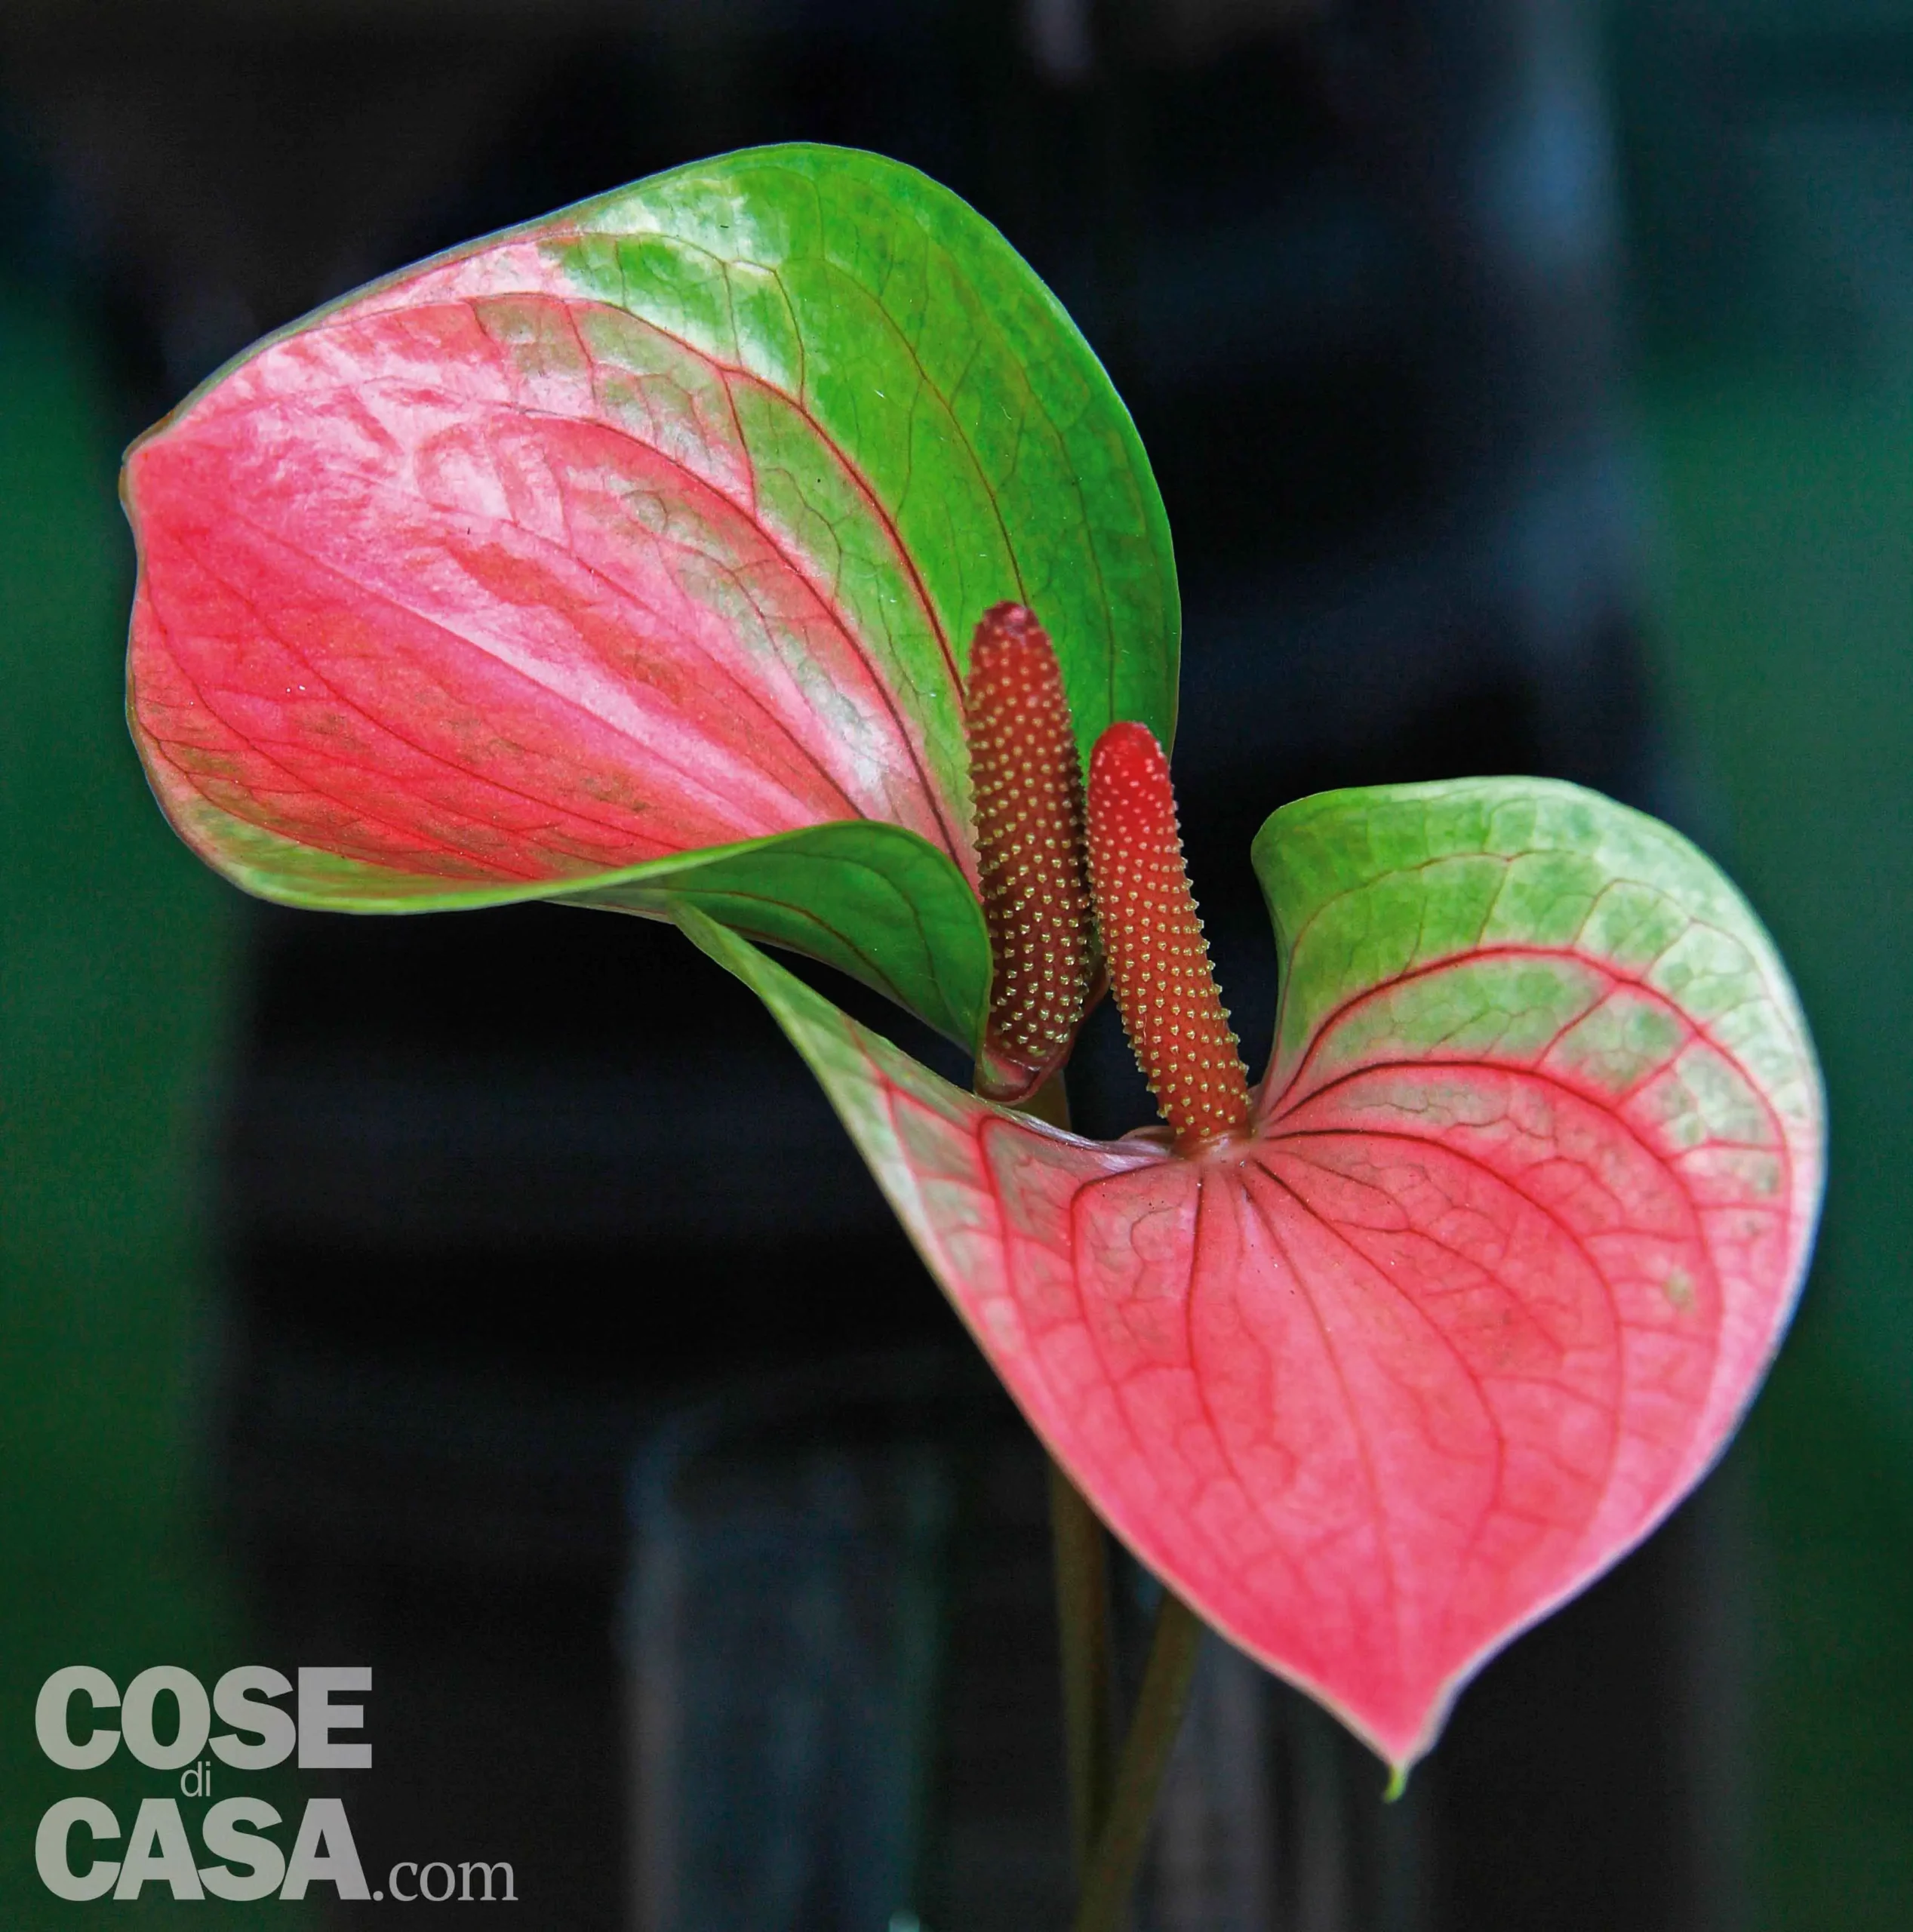 Anthurium fiore: la pianta da interno perfetta